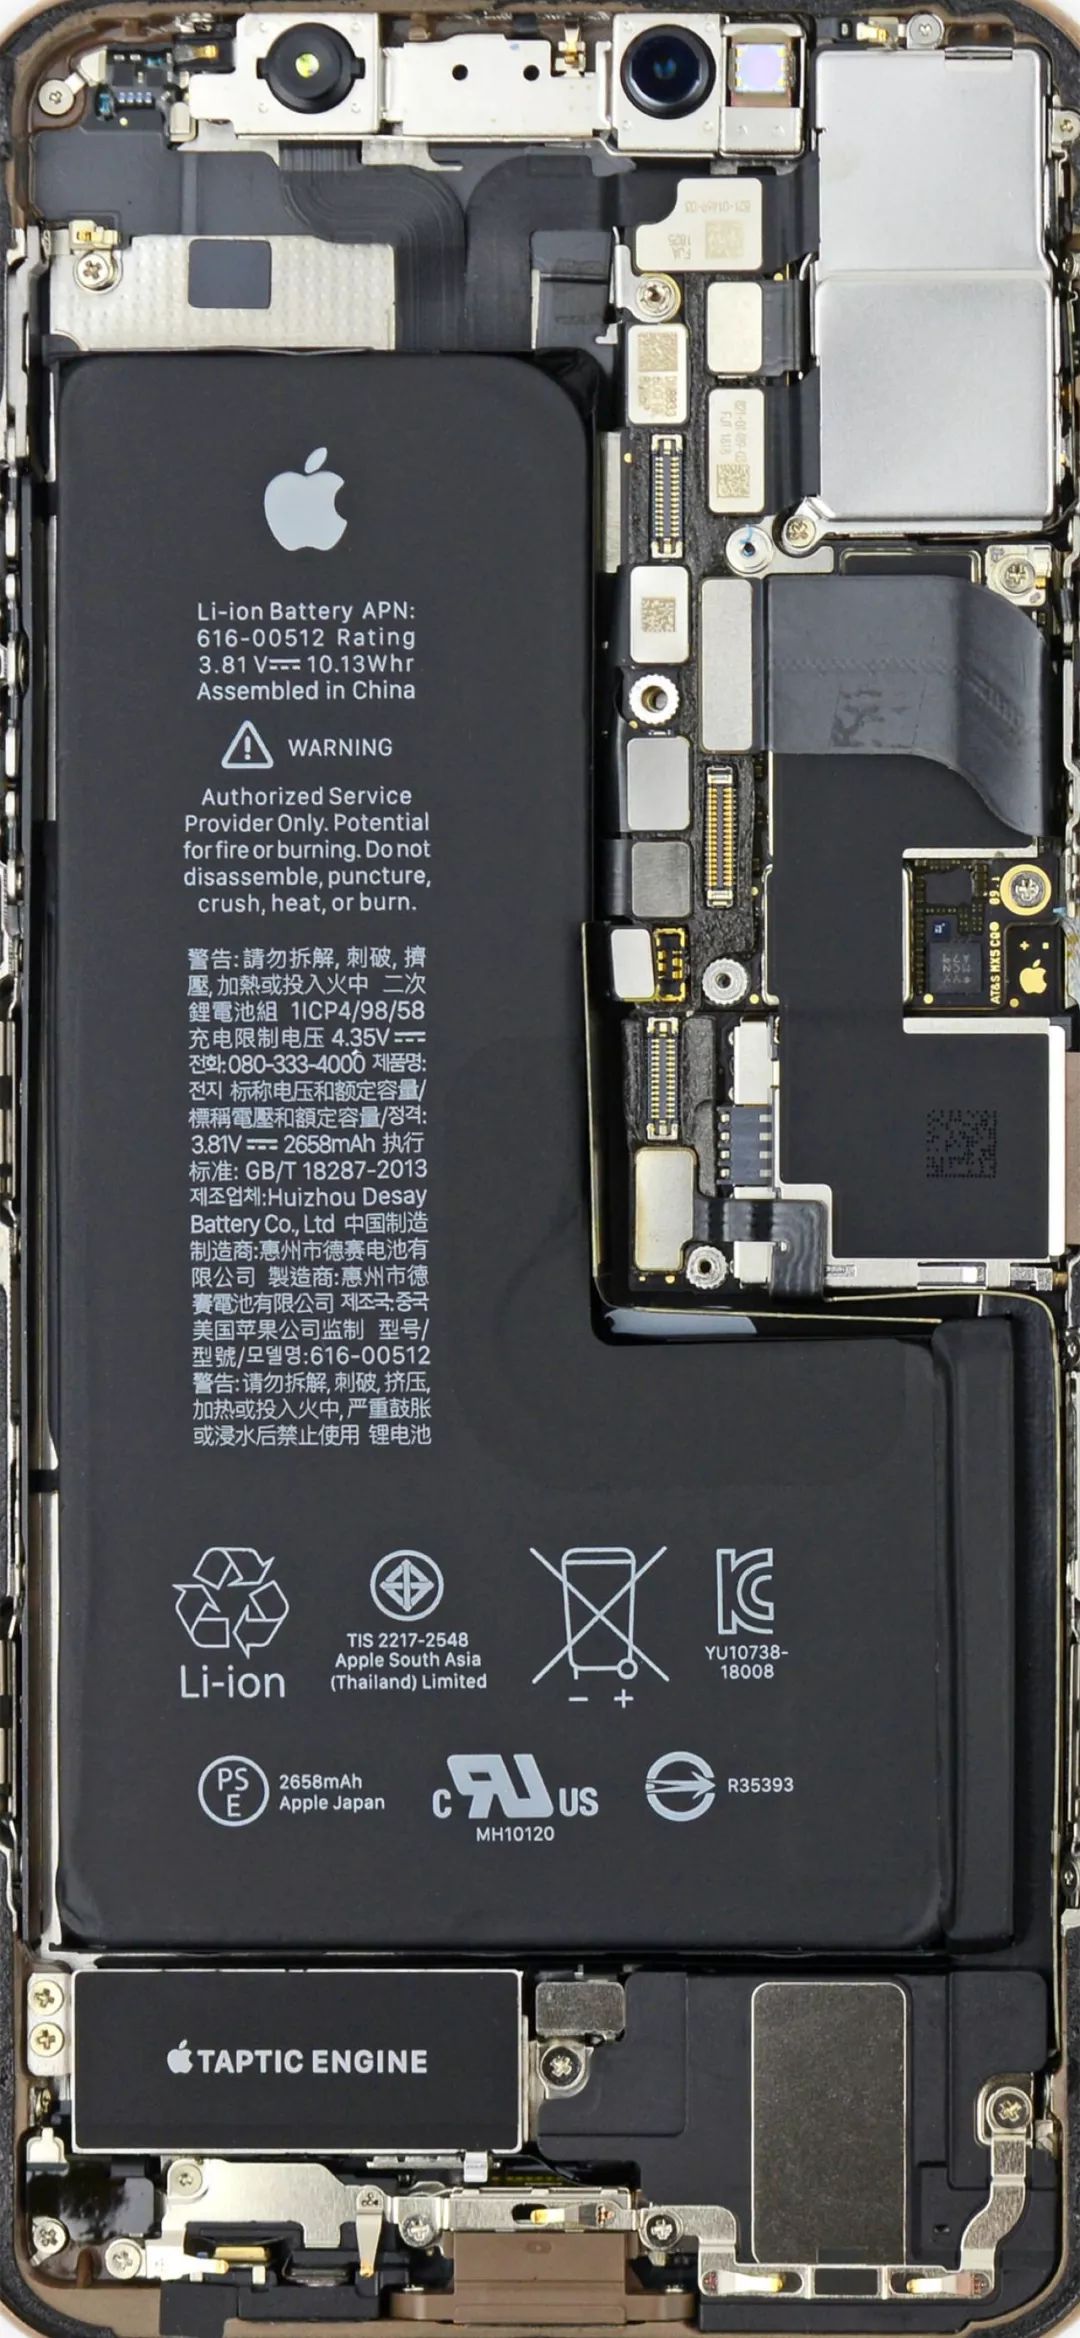 鈴聲壁紙鴨 最新iphone Xs Xs Max高清拆機壁紙 雪花新闻